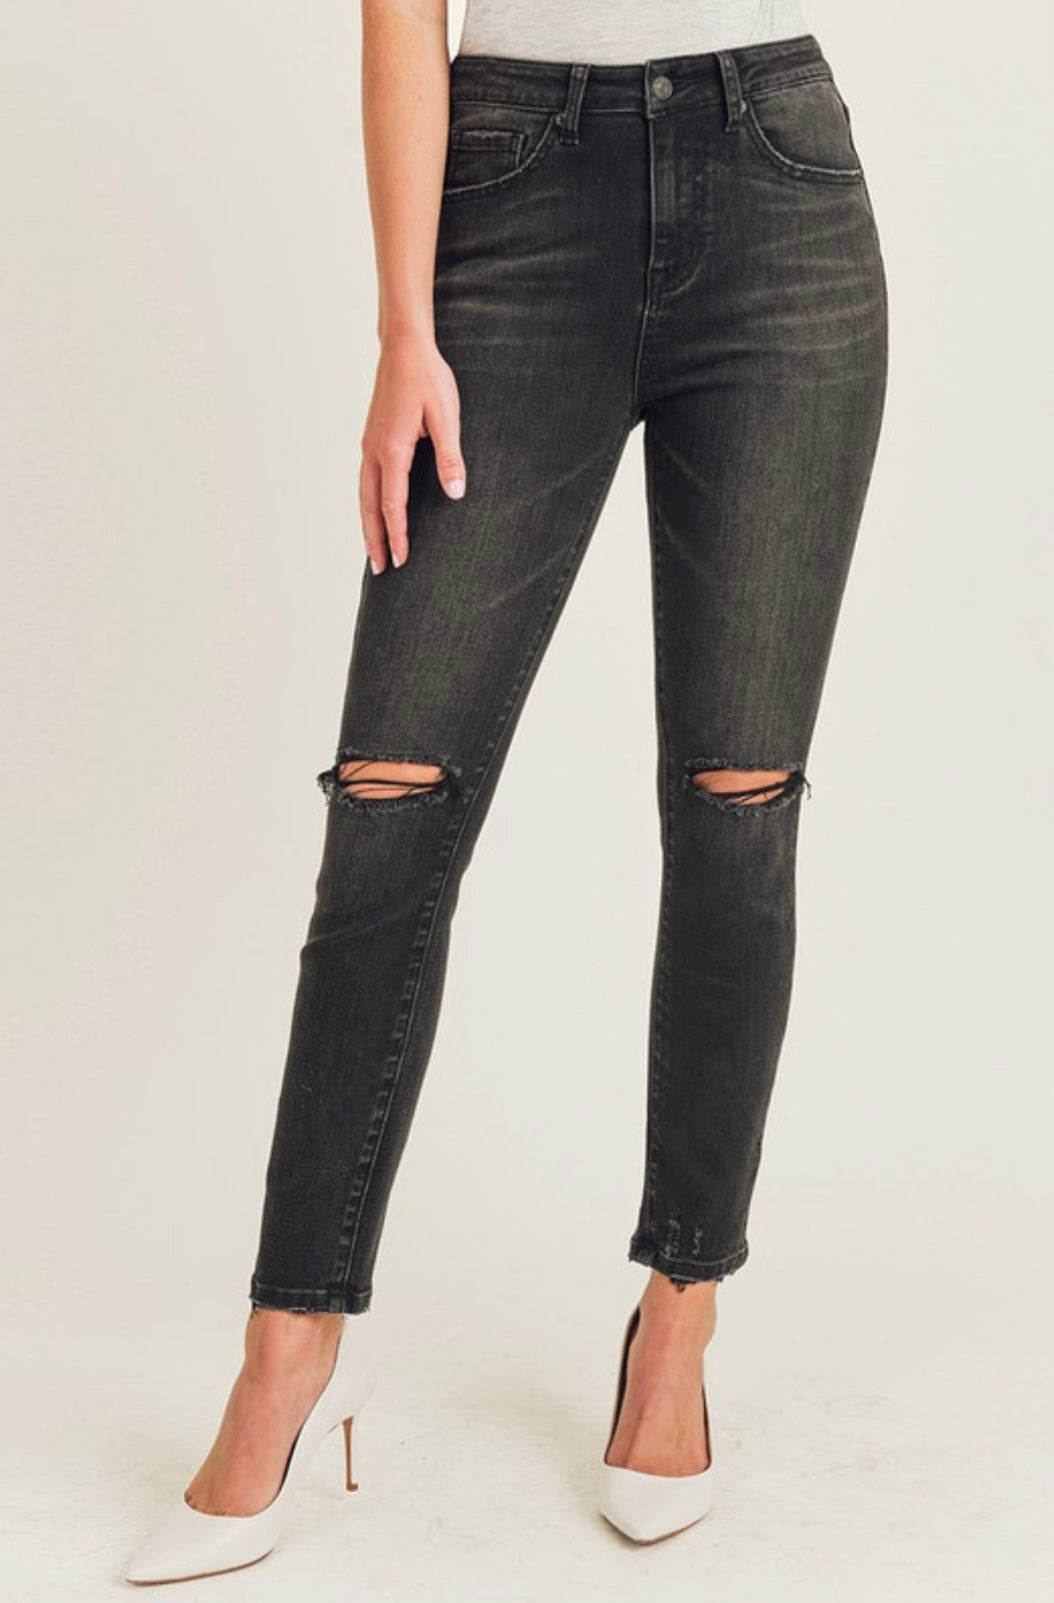 Black skinny Jeans